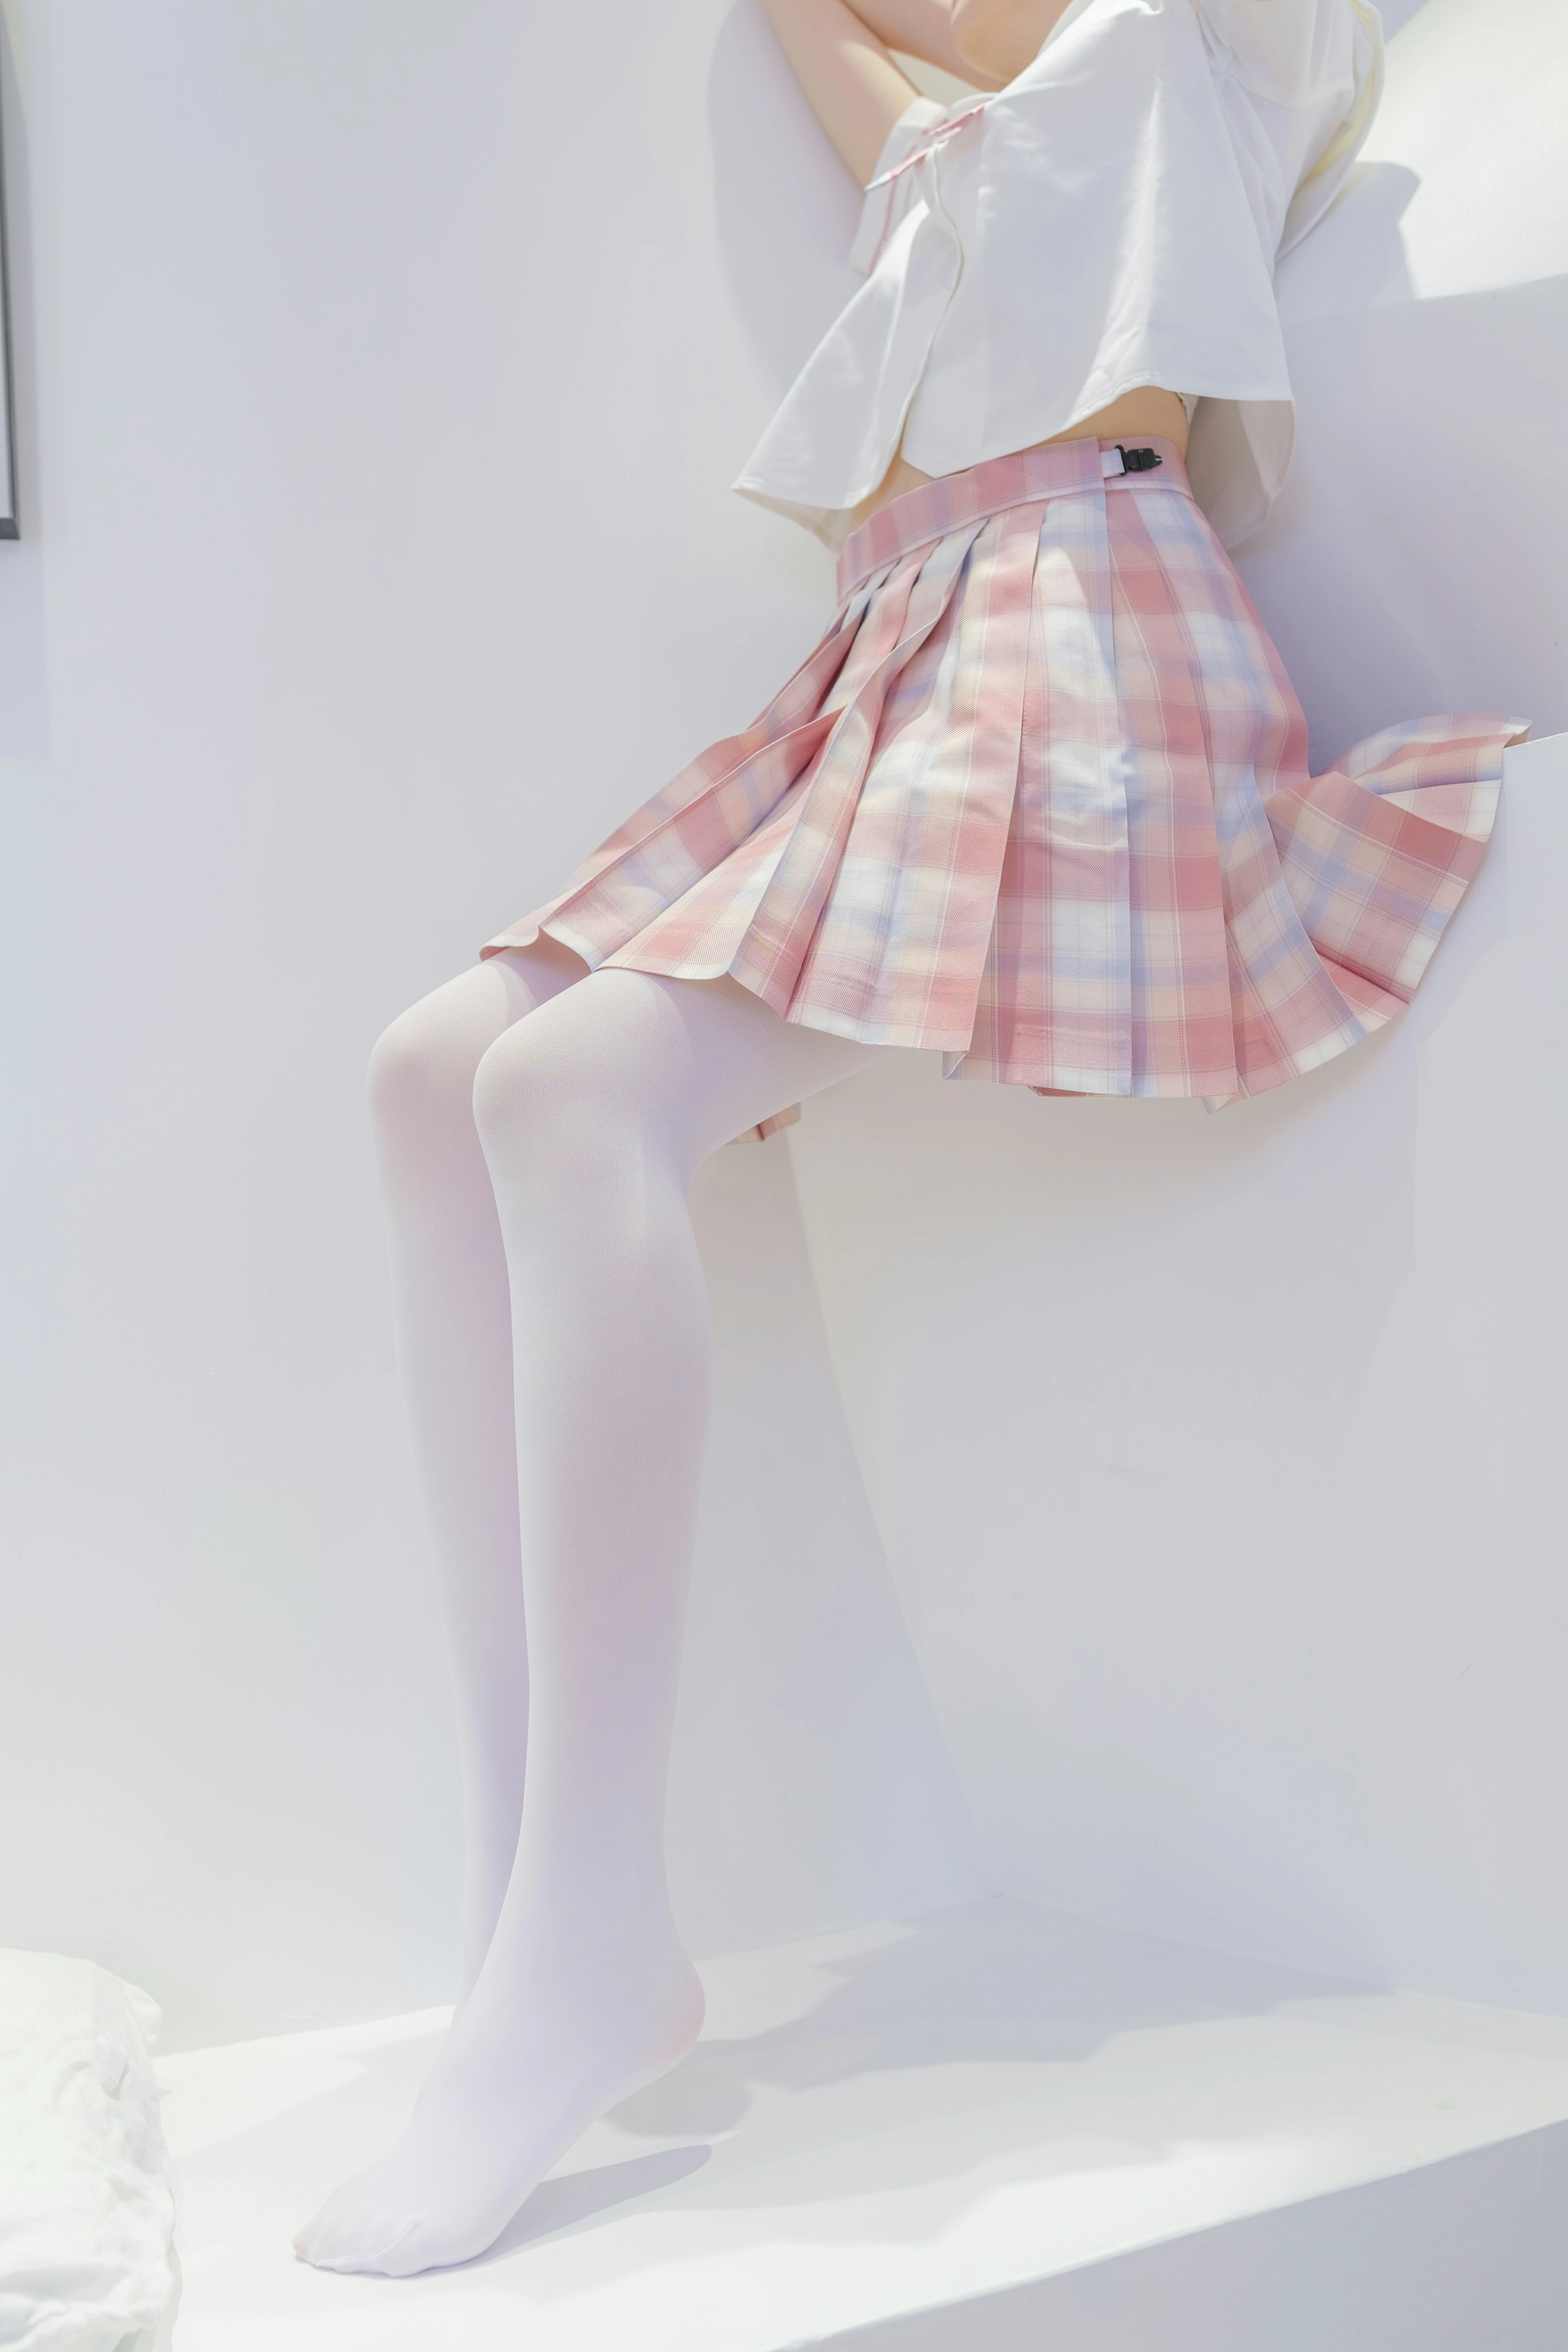 [森萝财团]GZAY3 酒店JK制服小萝莉 白色衬衫与粉色短裙加白色丝袜美腿性感私房写真集,0035